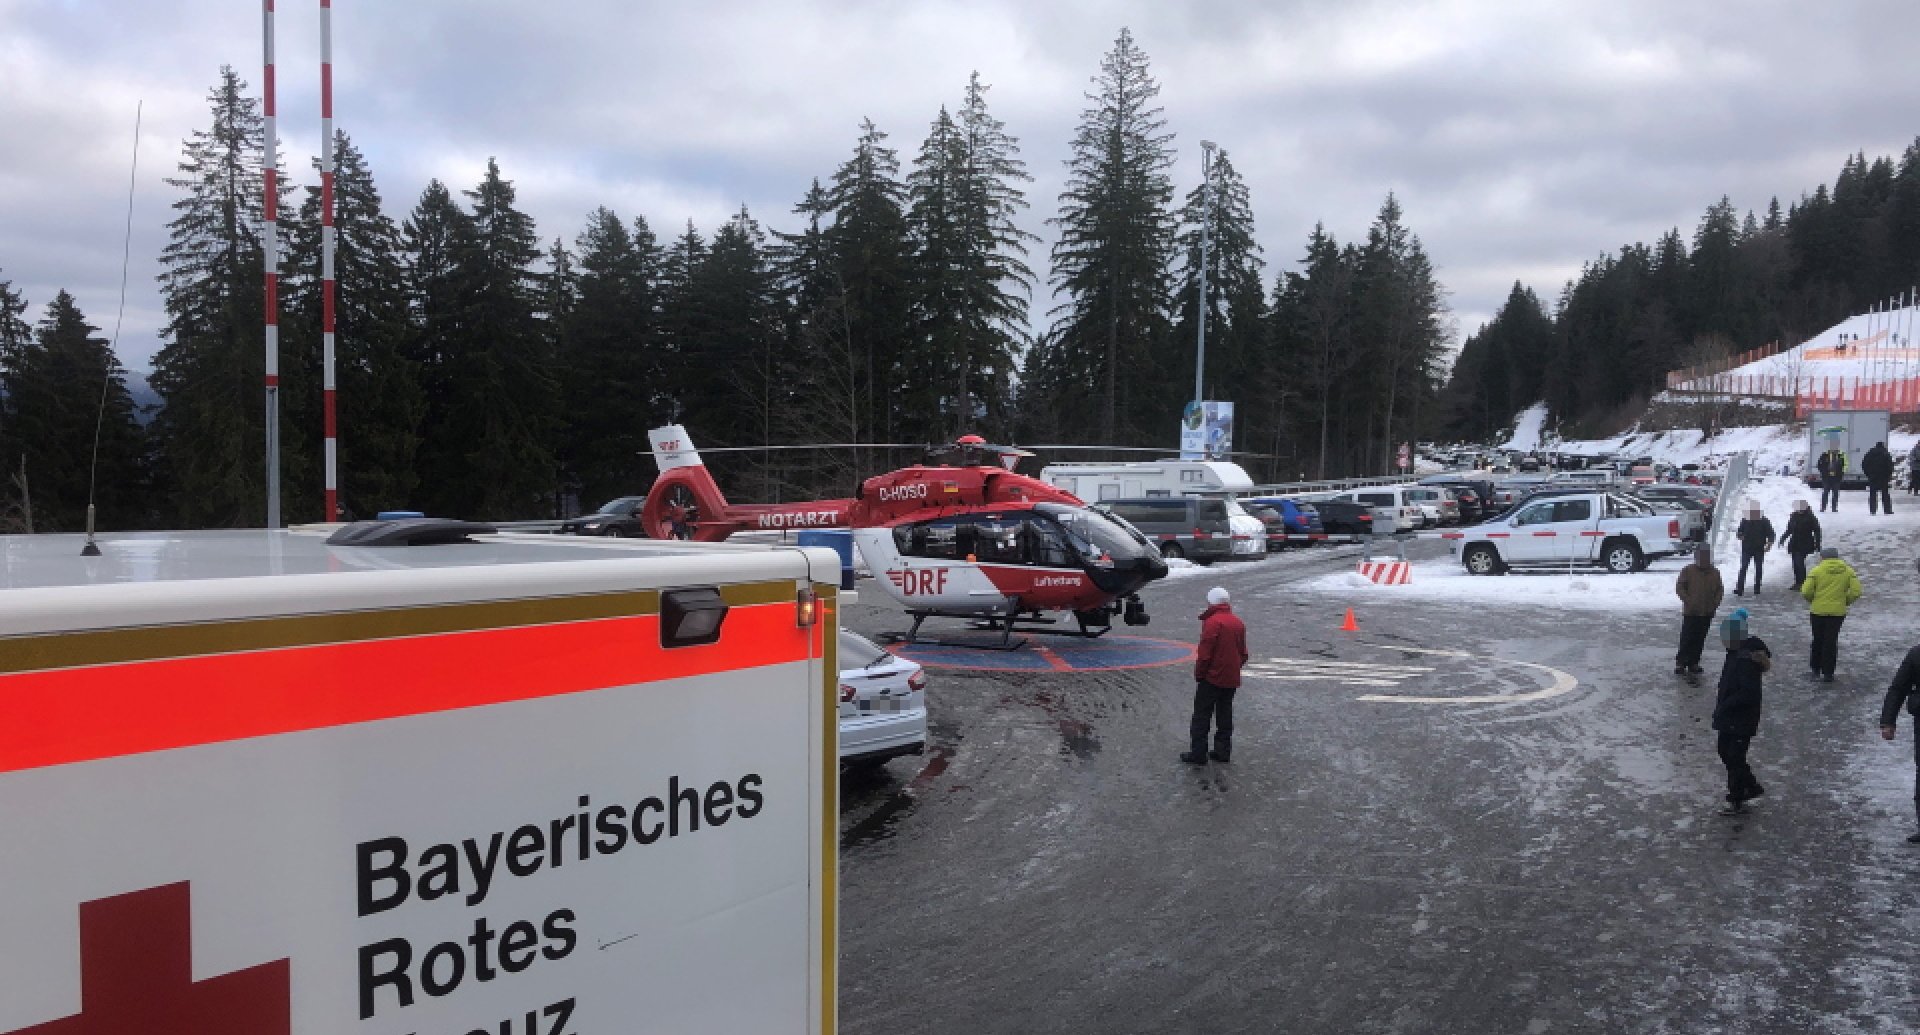 drf-luftrettung-regensburg-einsatz-skifahren-sturz-960x600-1